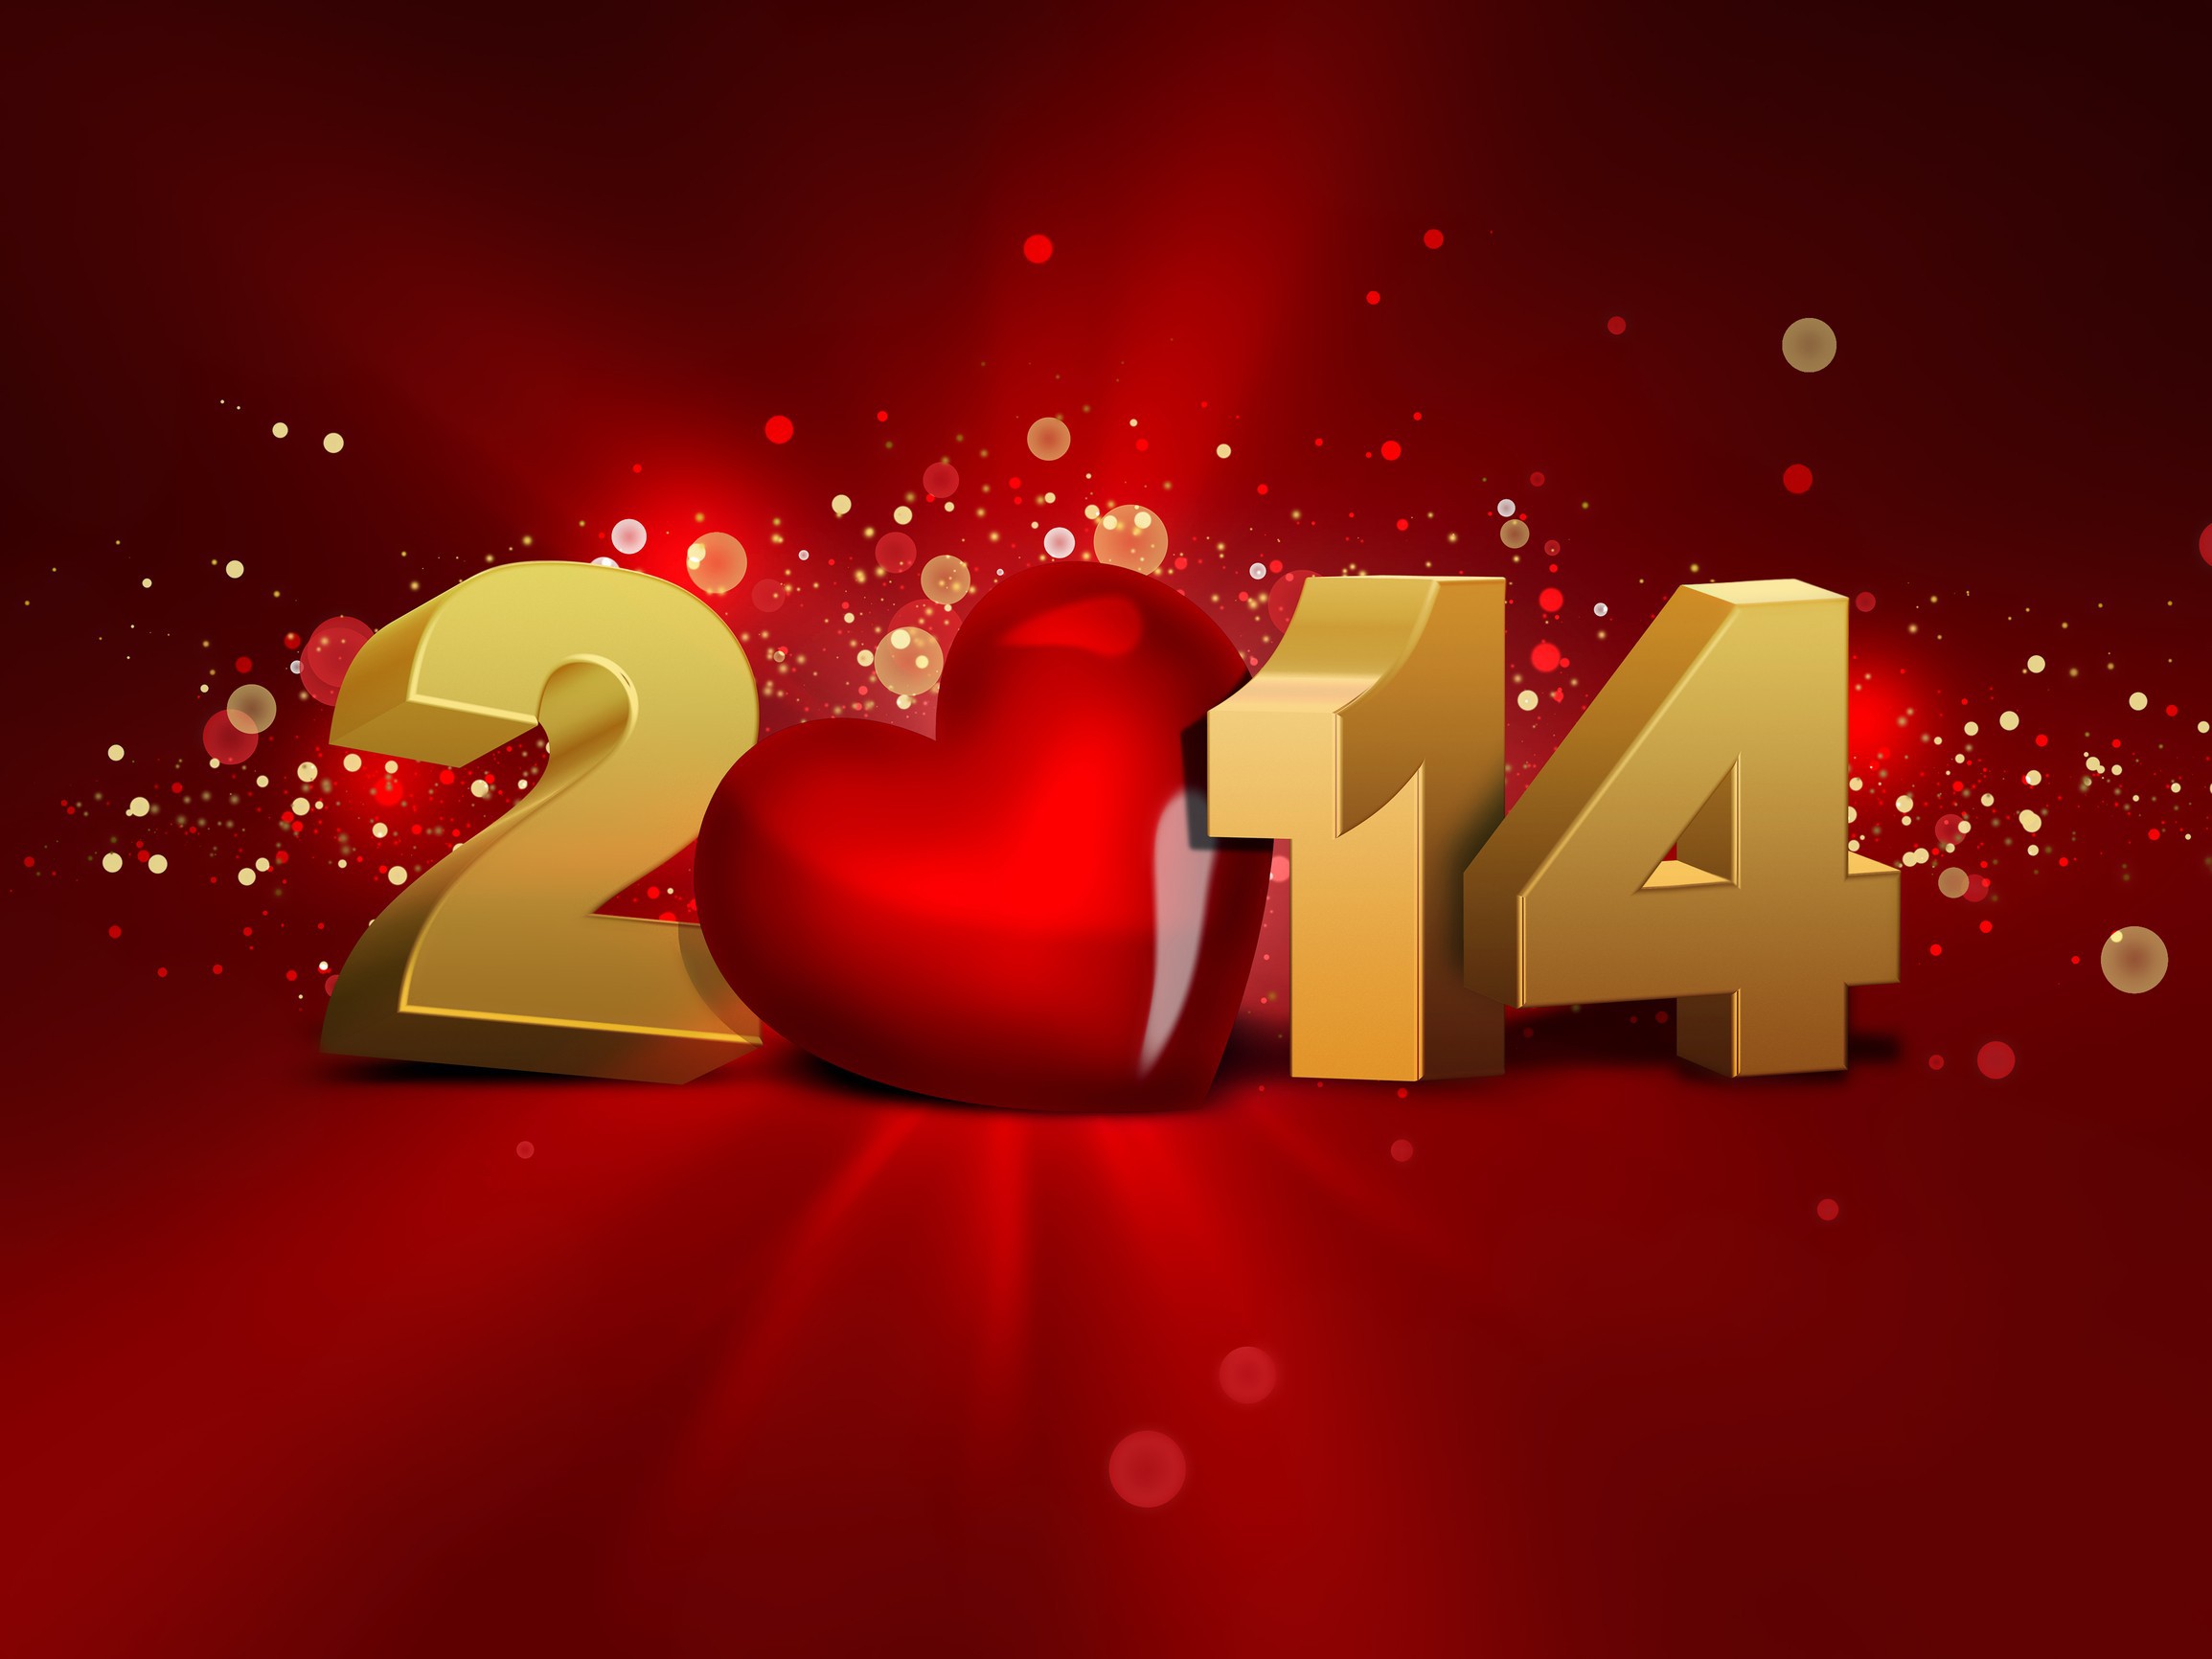 2014 2015 году. 2014 Год картинка. Новый год 2014. Картинки новый год 2015. Картинки 2014.